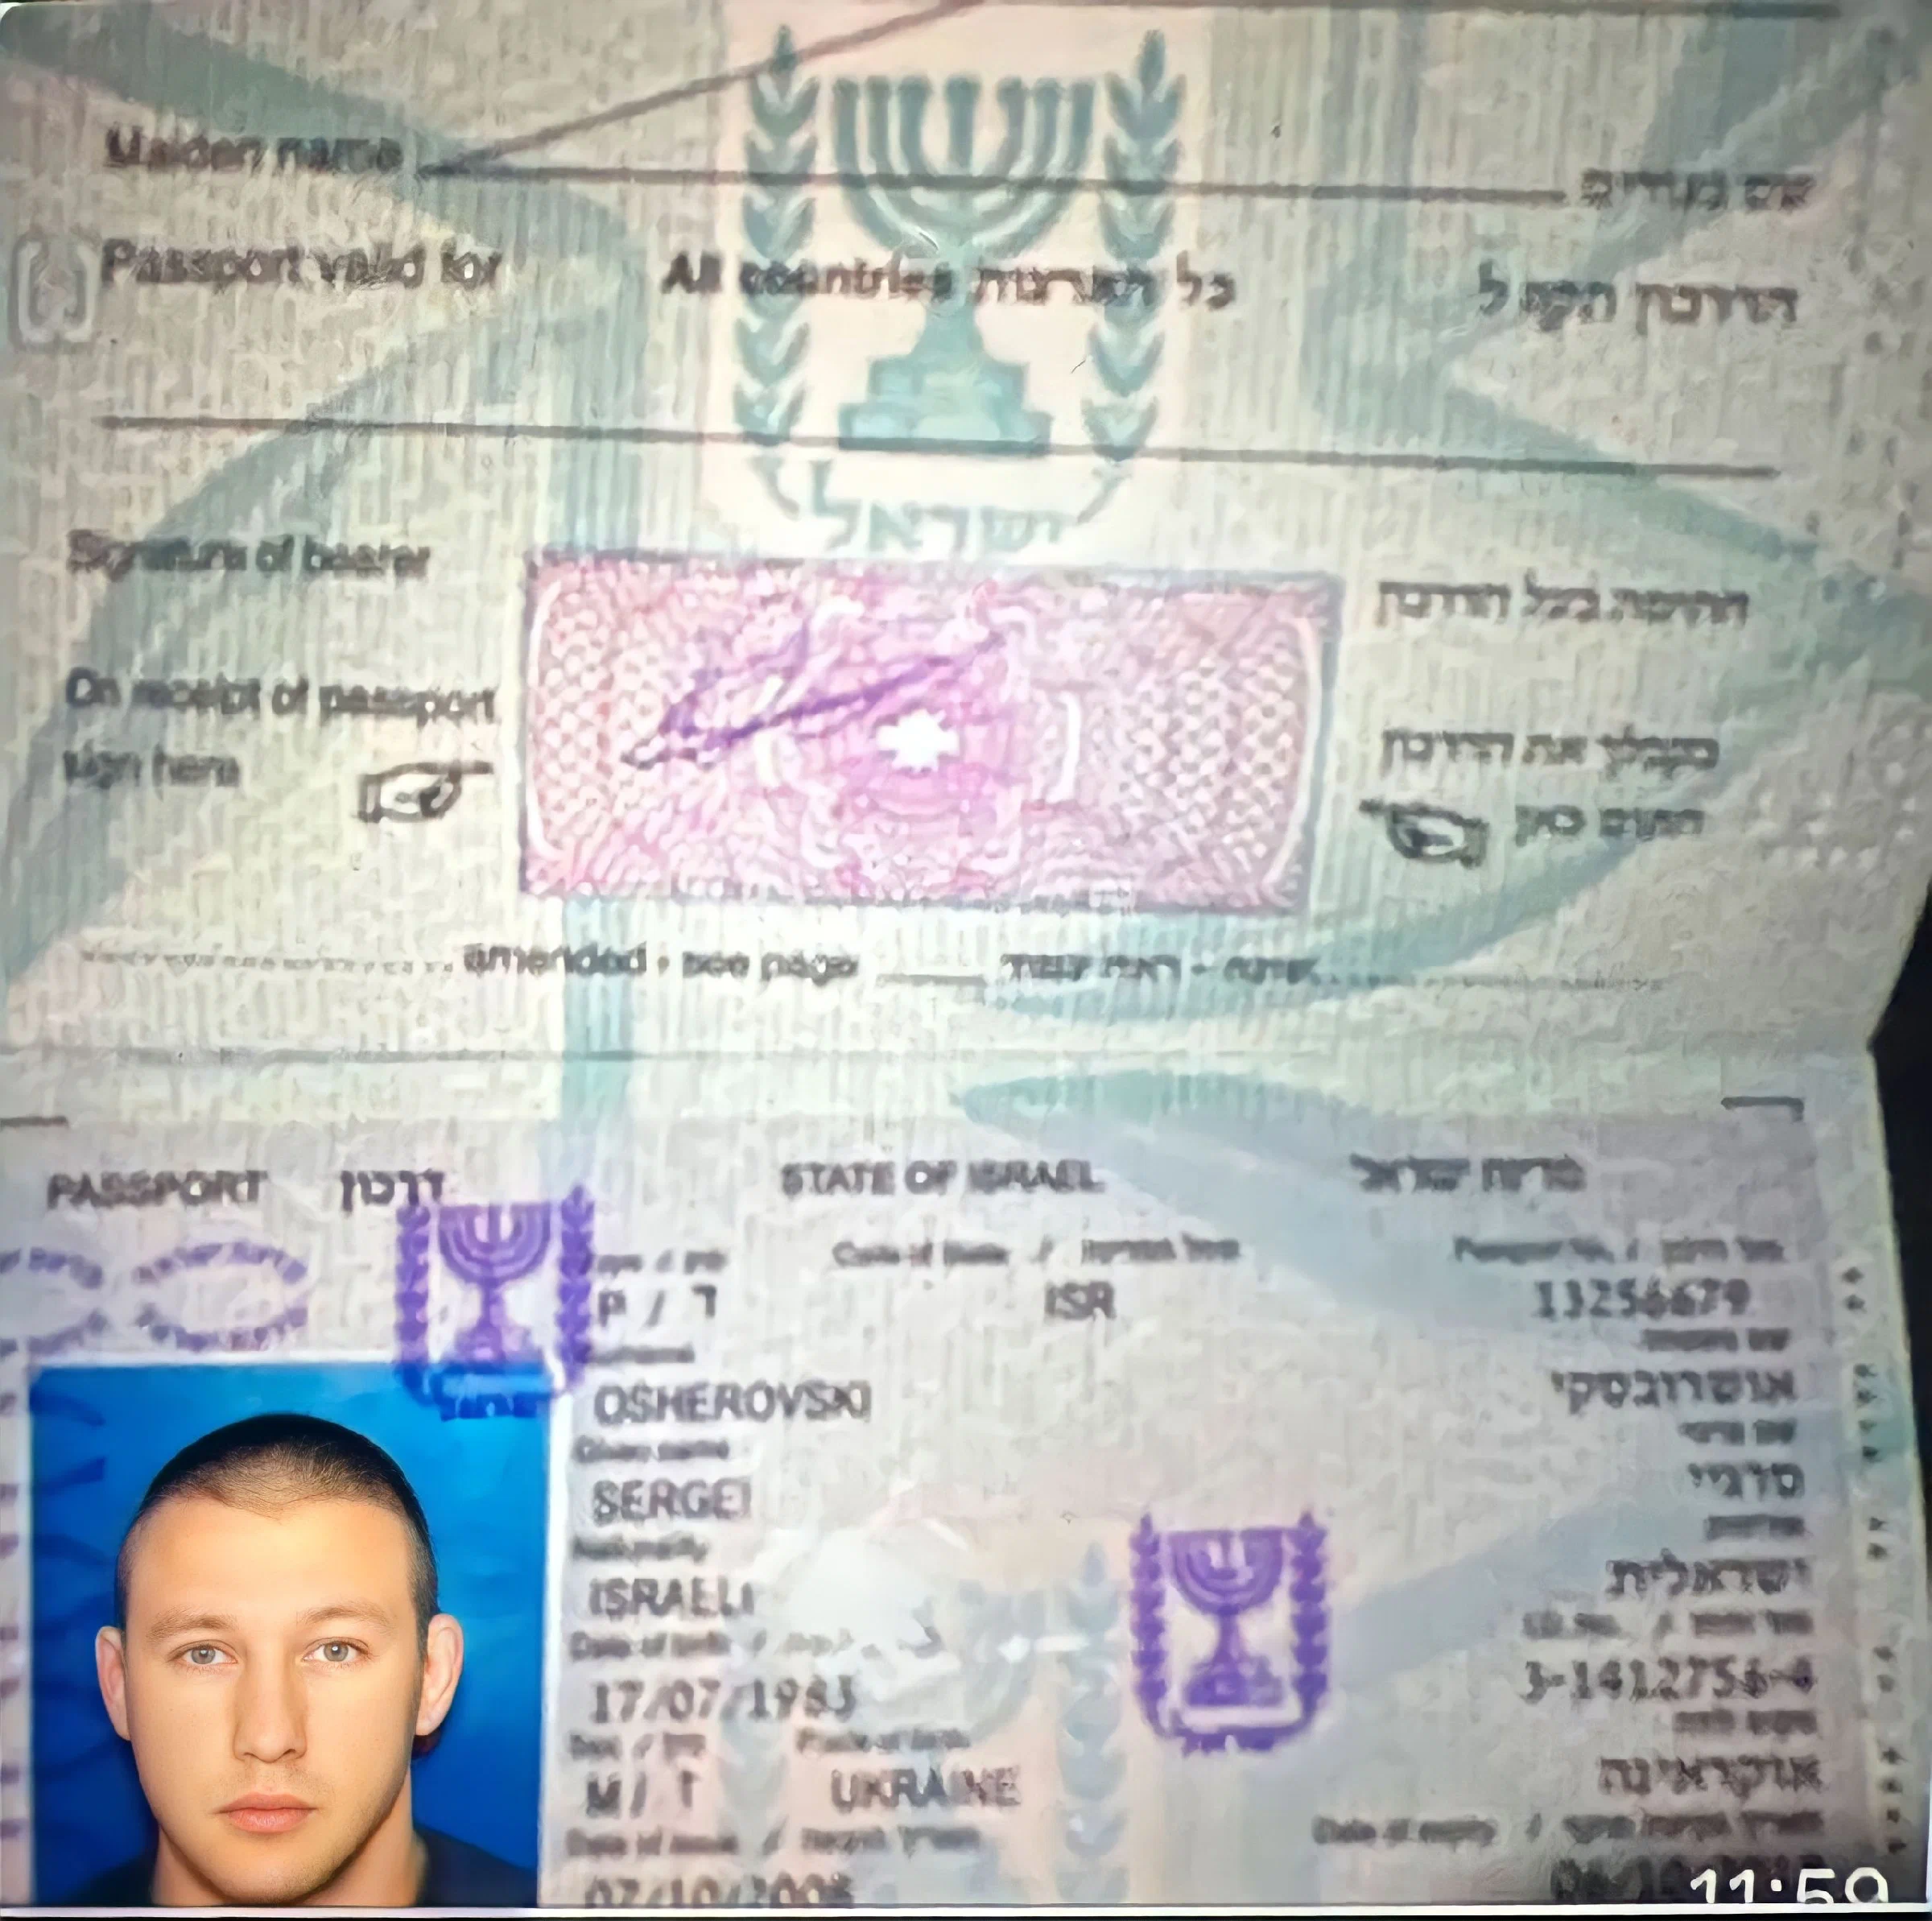 Сергей Леонидович Ошеровский паспорт Израиля-1